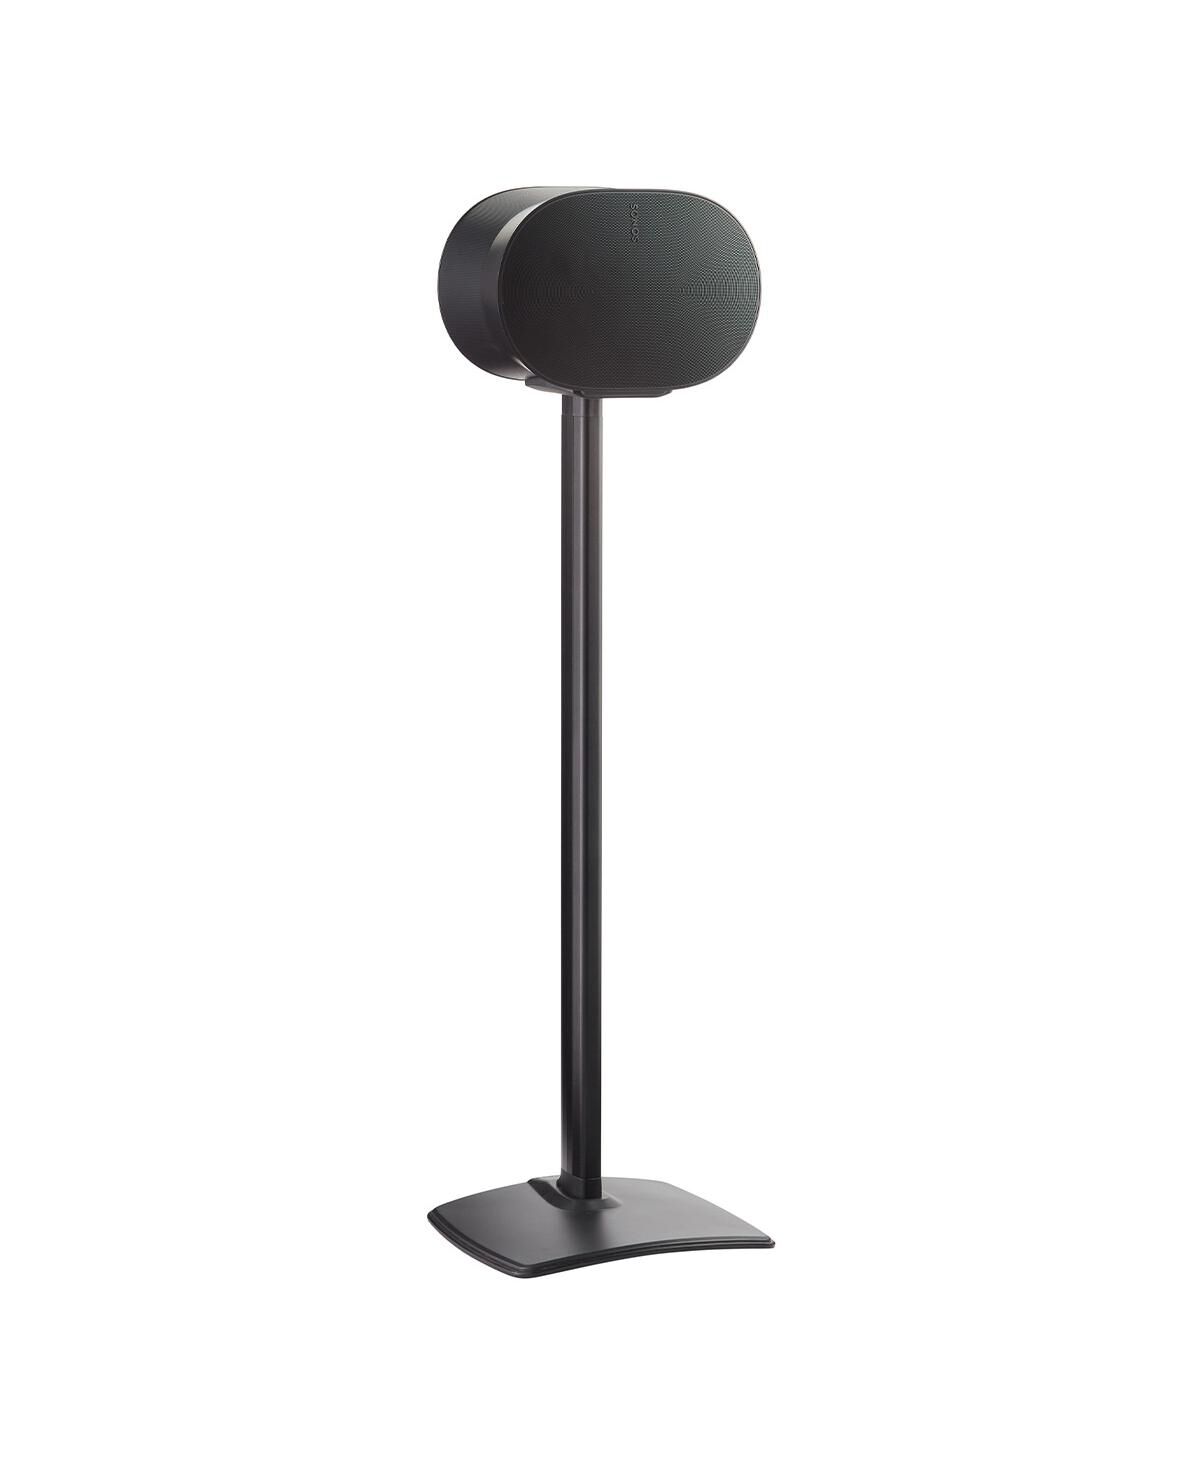 Sanus Fixed-Height Speaker Stand for Sonos Era 300 - Each - Black